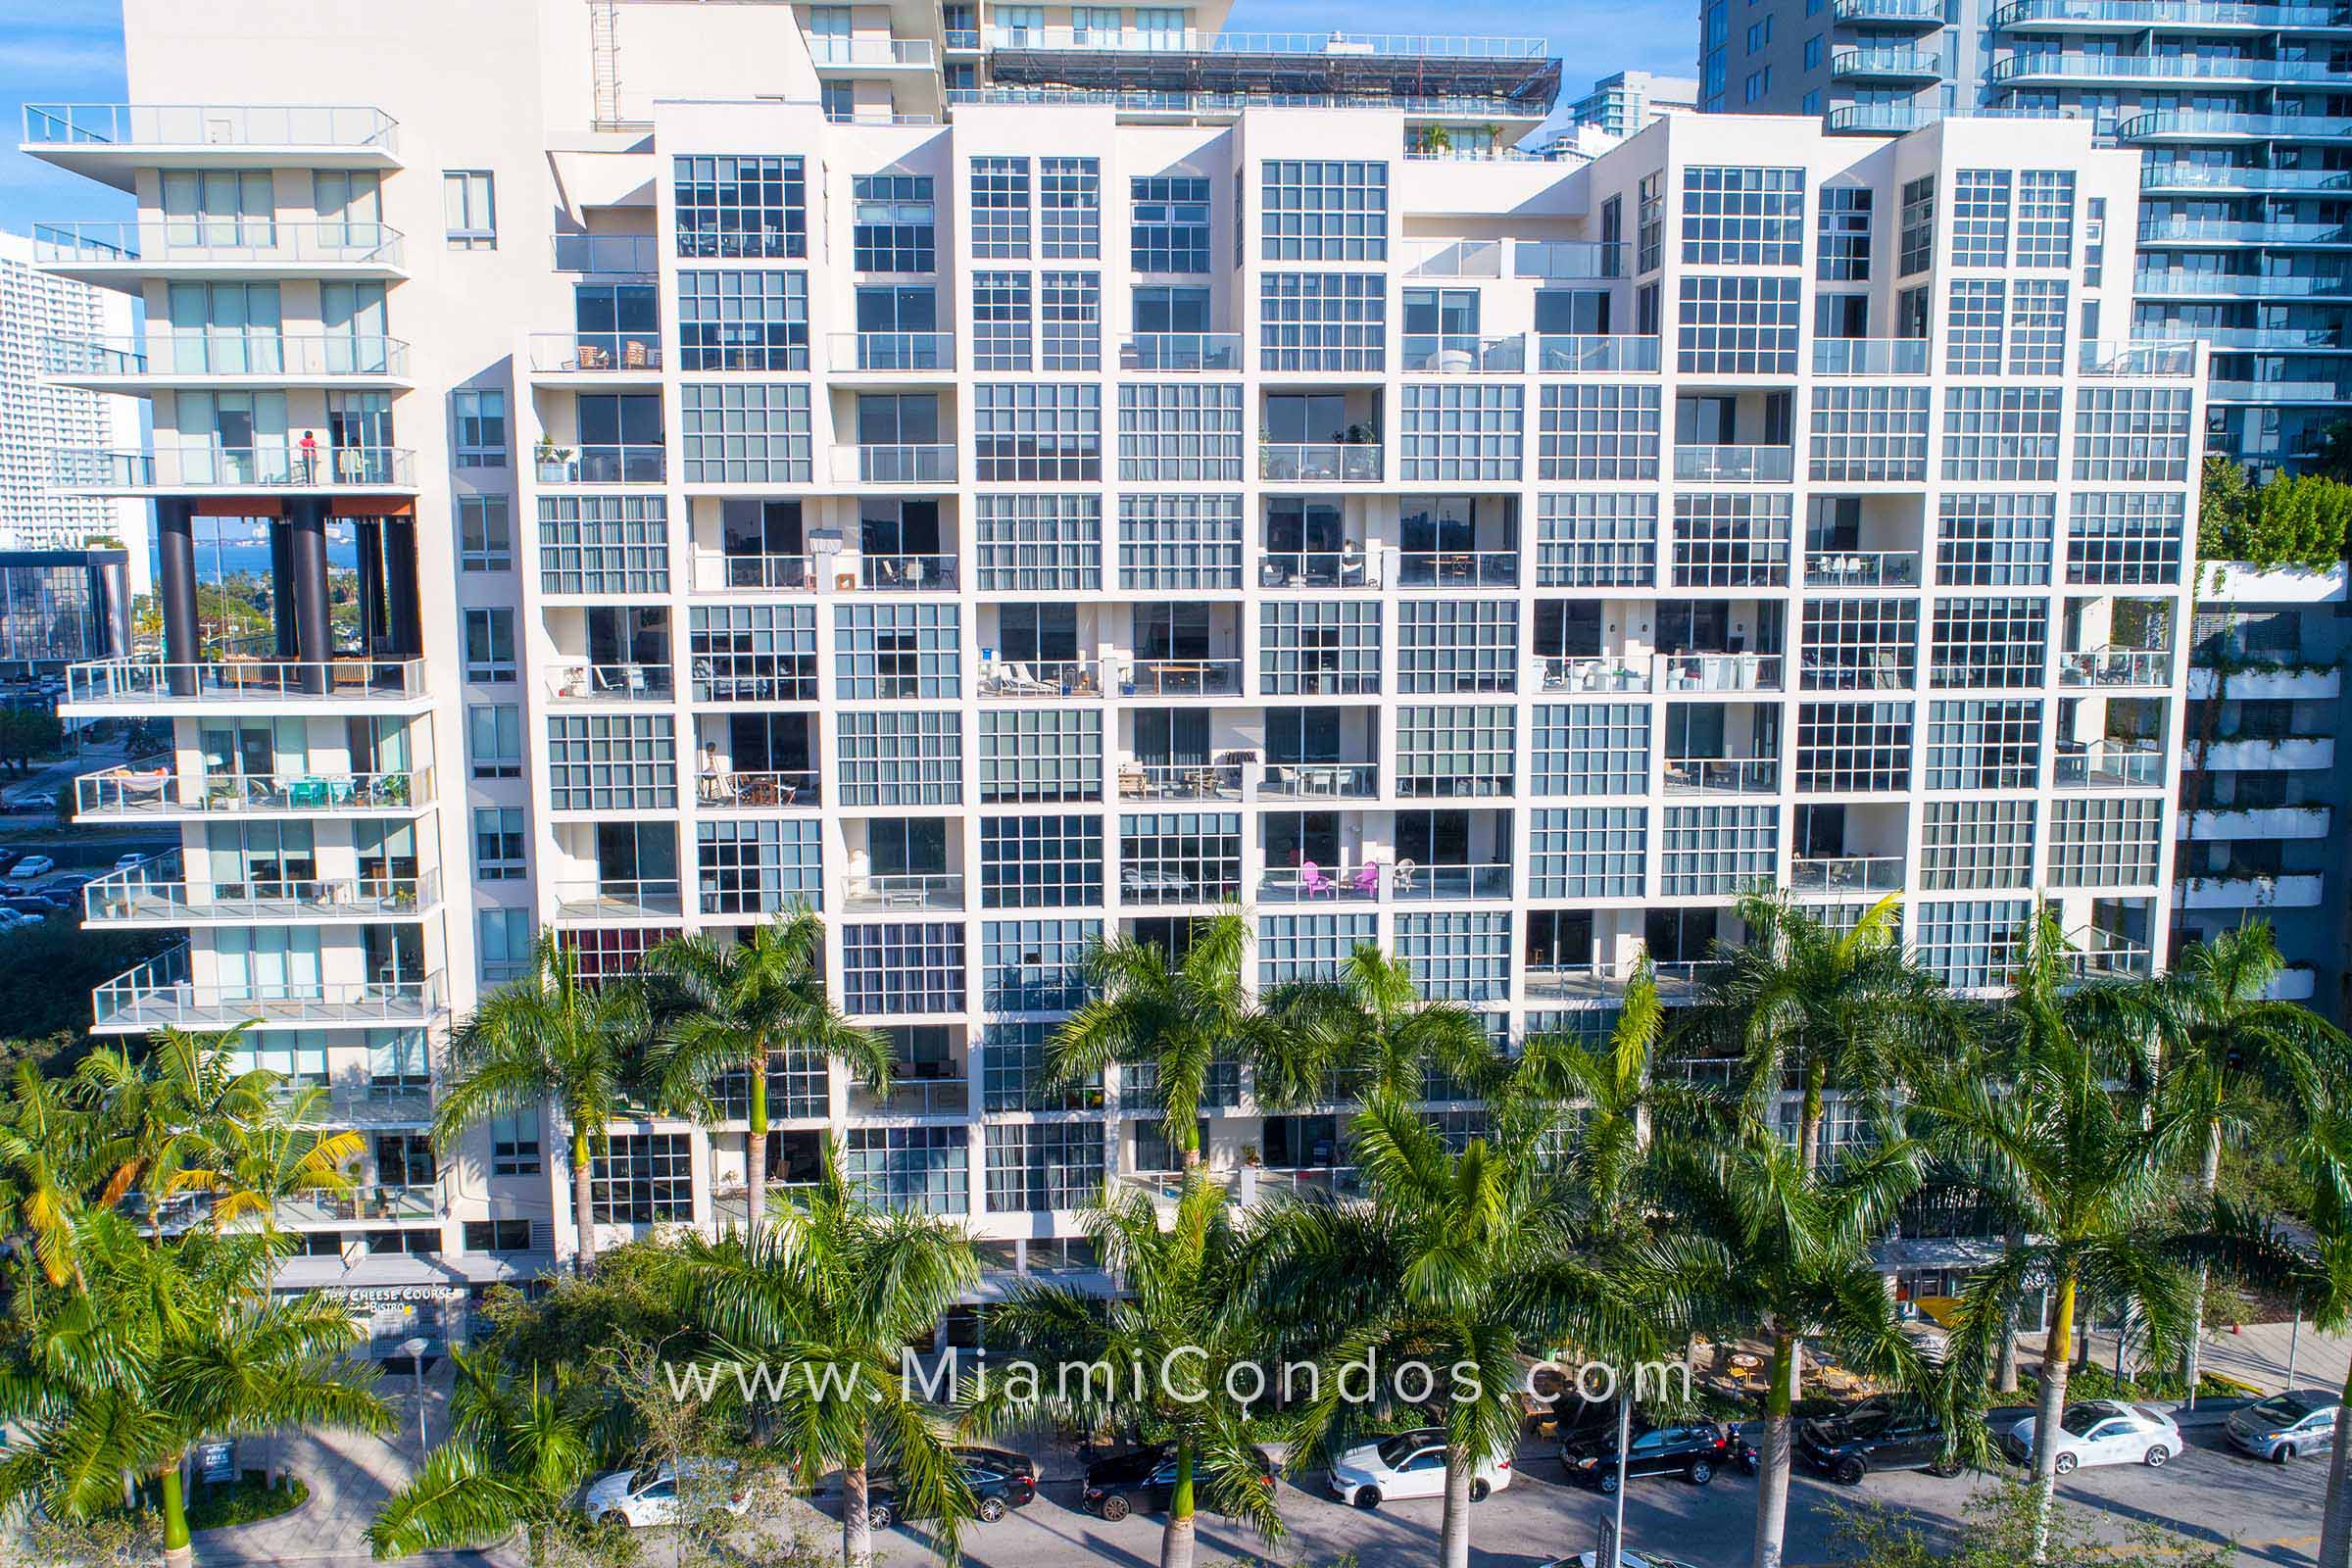 Midtown 2 Condos in Miami